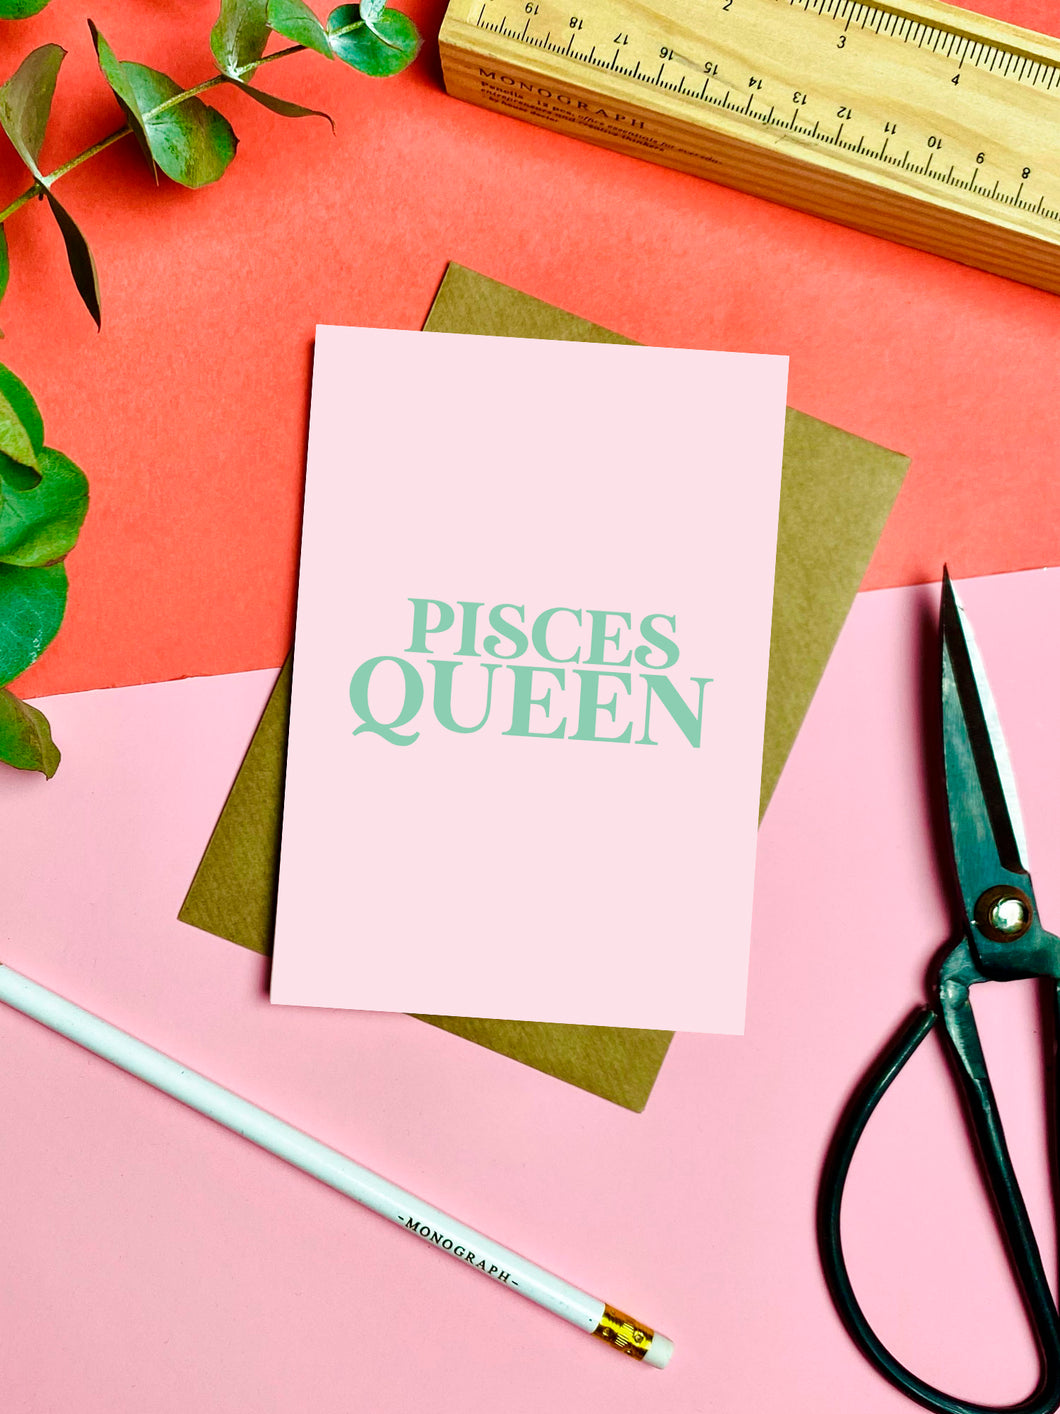 Pisces Queen Card